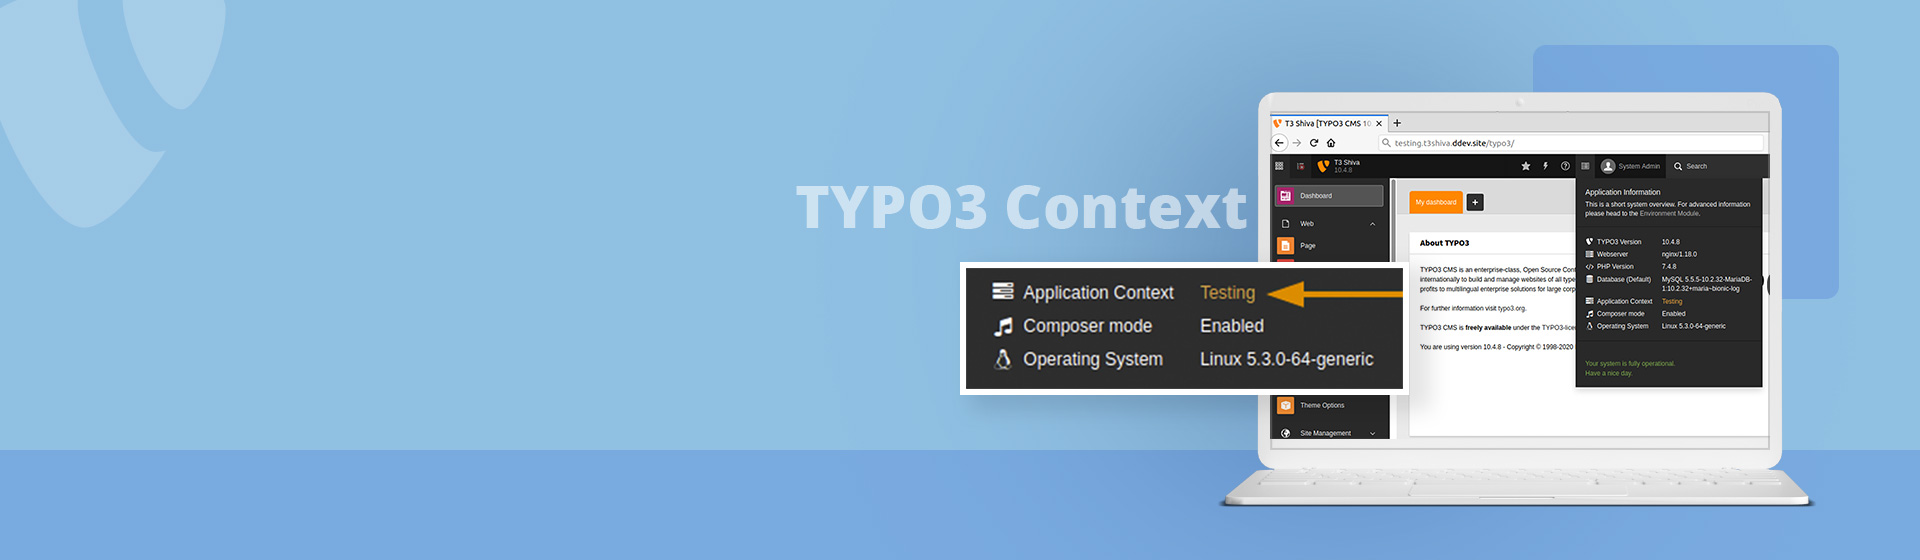 Wie kann man TYPO3 Context nutzen, um die Umgebung zu verbessern?